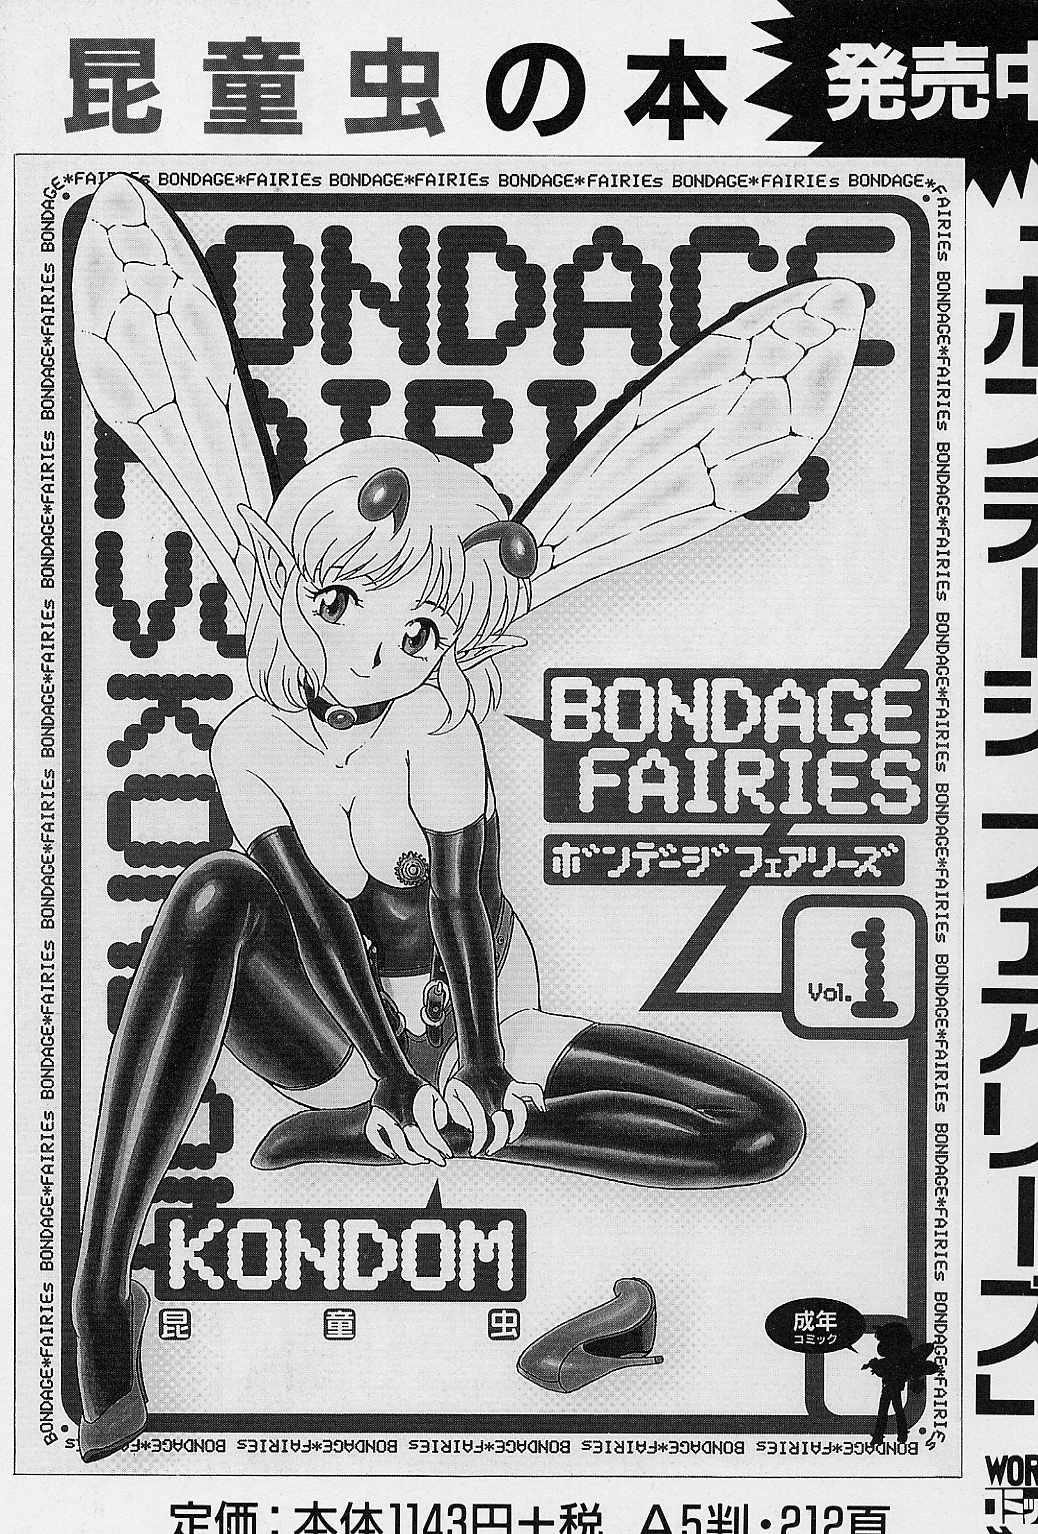 Club Bondage Fairies Vol. 2 Femdom - Page 164